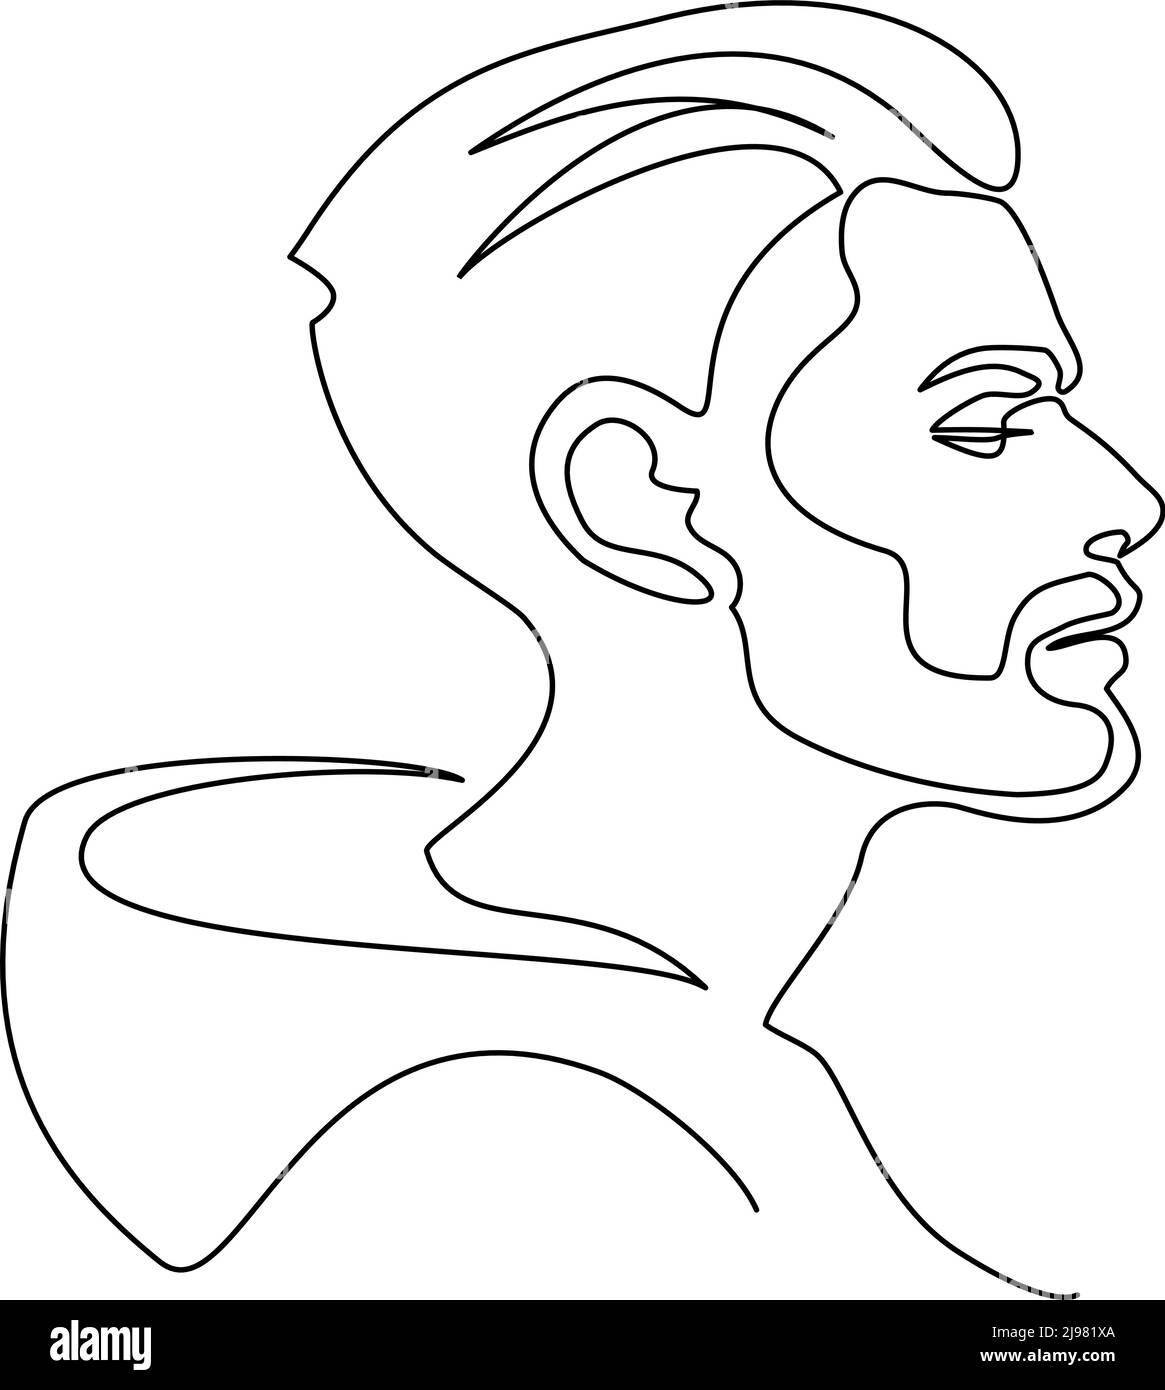 Ritratto moderno di uomo con barba di profilo. Disegno continuo su una linea. Illustrazione vettoriale. Illustrazione Vettoriale